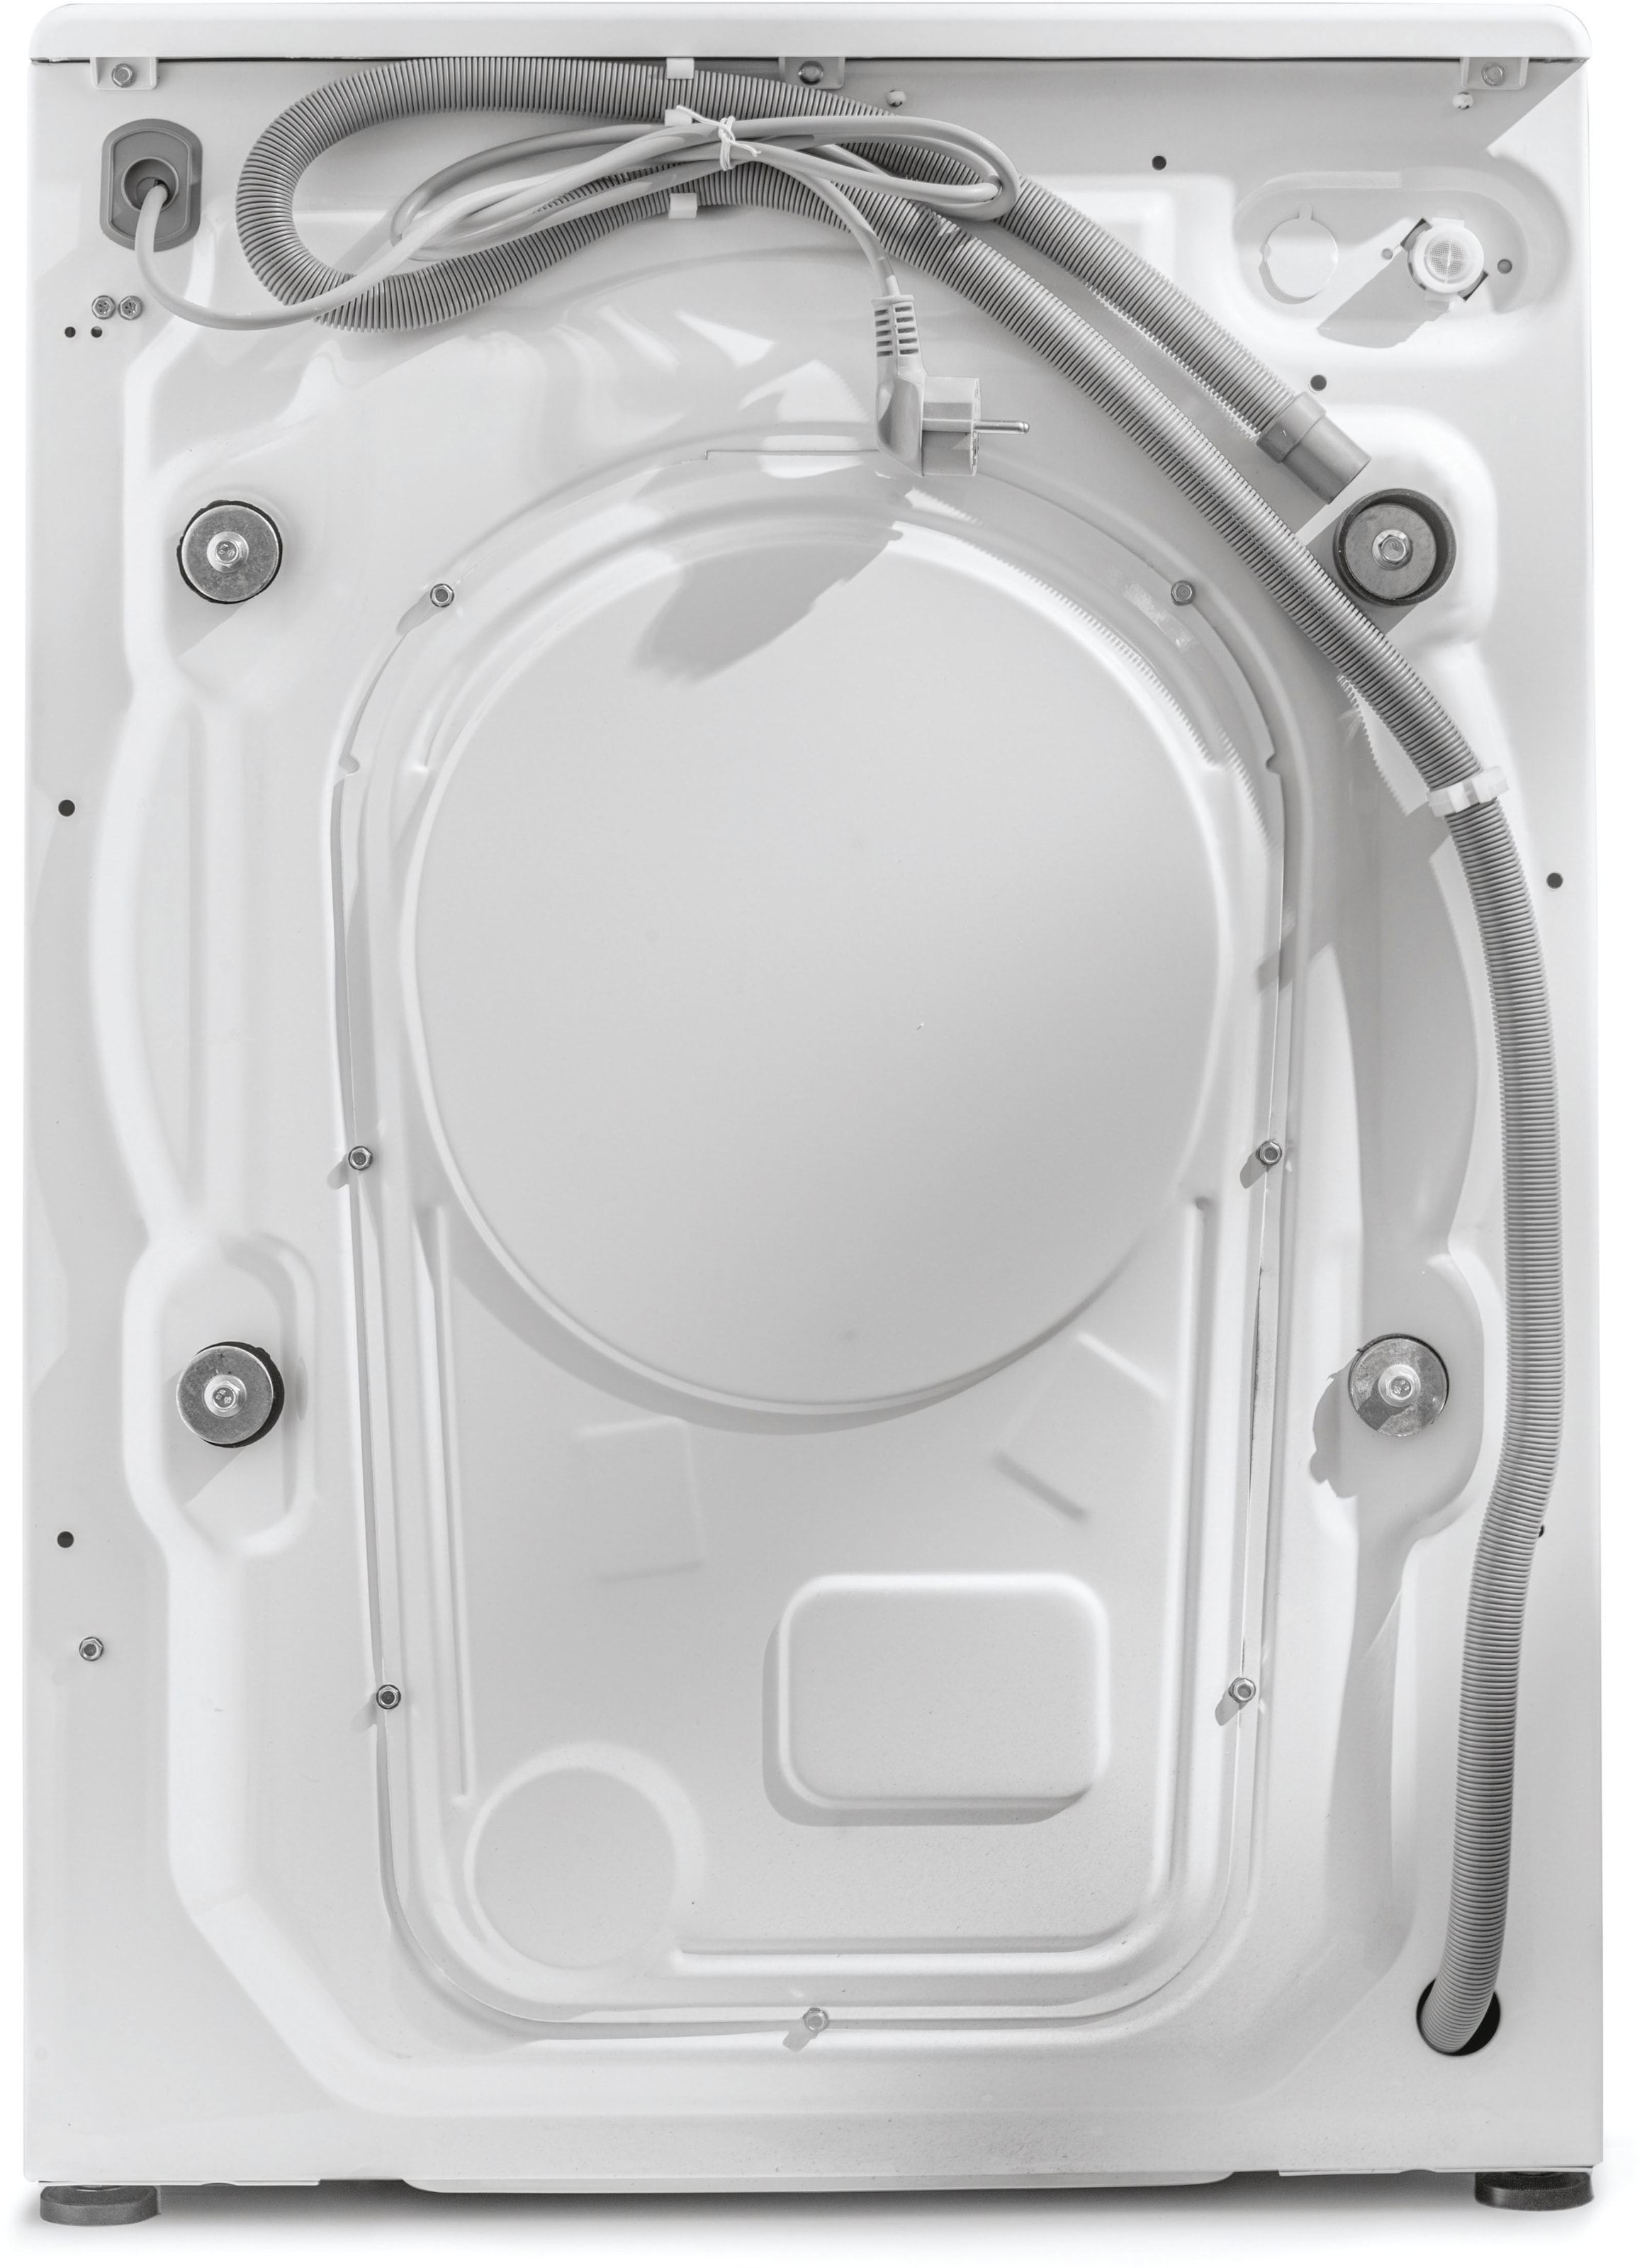 Haier Waschmaschine »HW70-B14929«, HW70-B14929, 7 kg, 1400 U/min, das Hygiene Plus: ABT® Antibakterielle Technologie